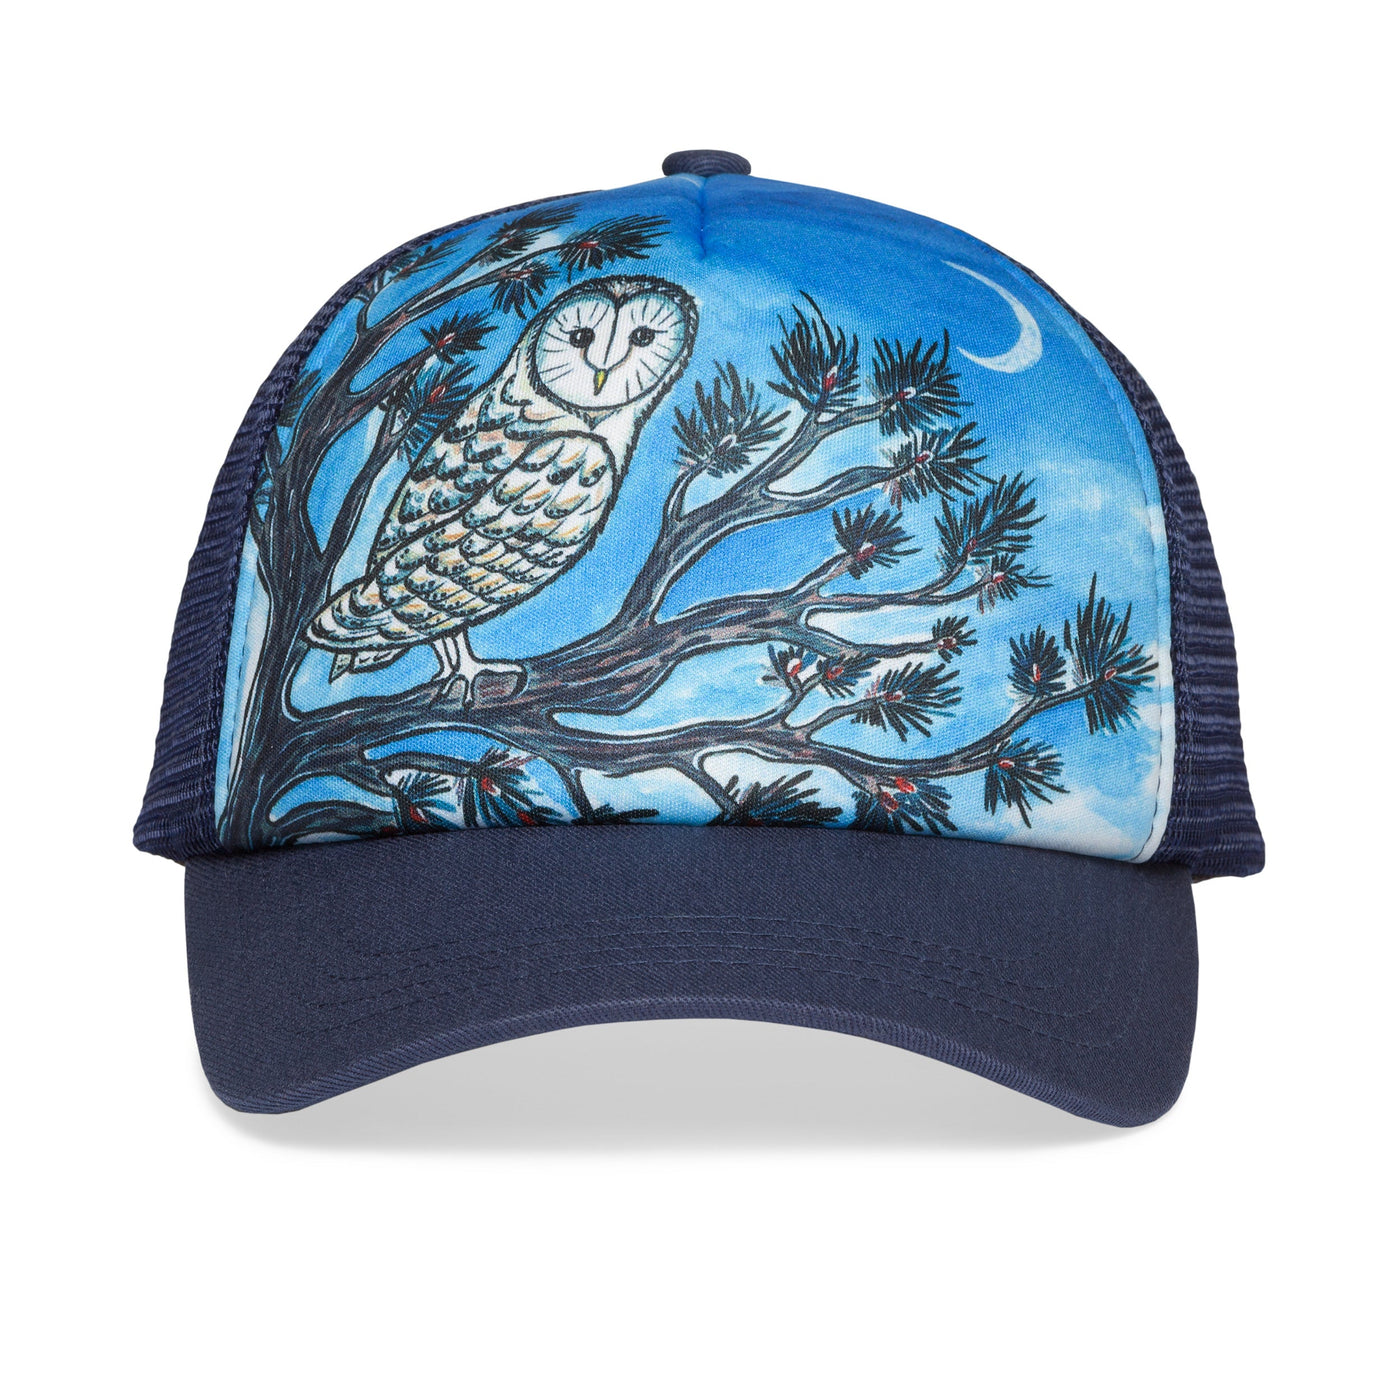 Kids' Night Owl Trucker Hat